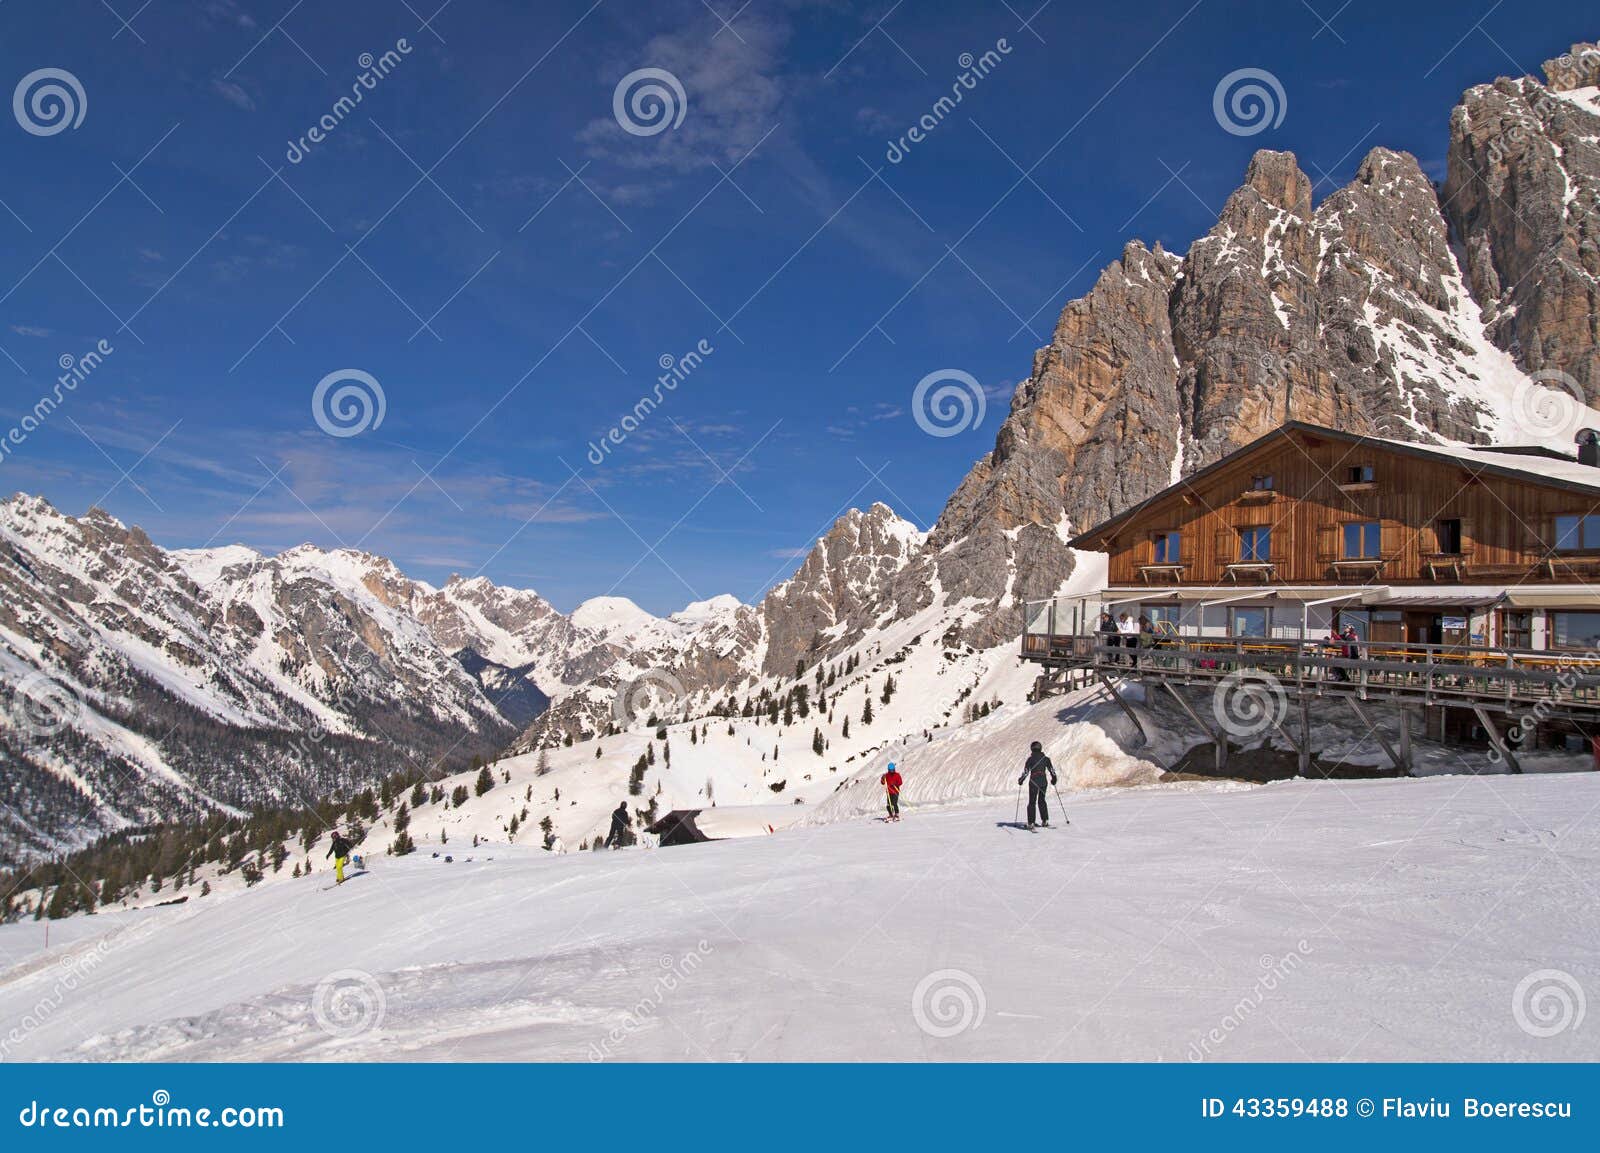 ski slope and hut in dolomites, italy